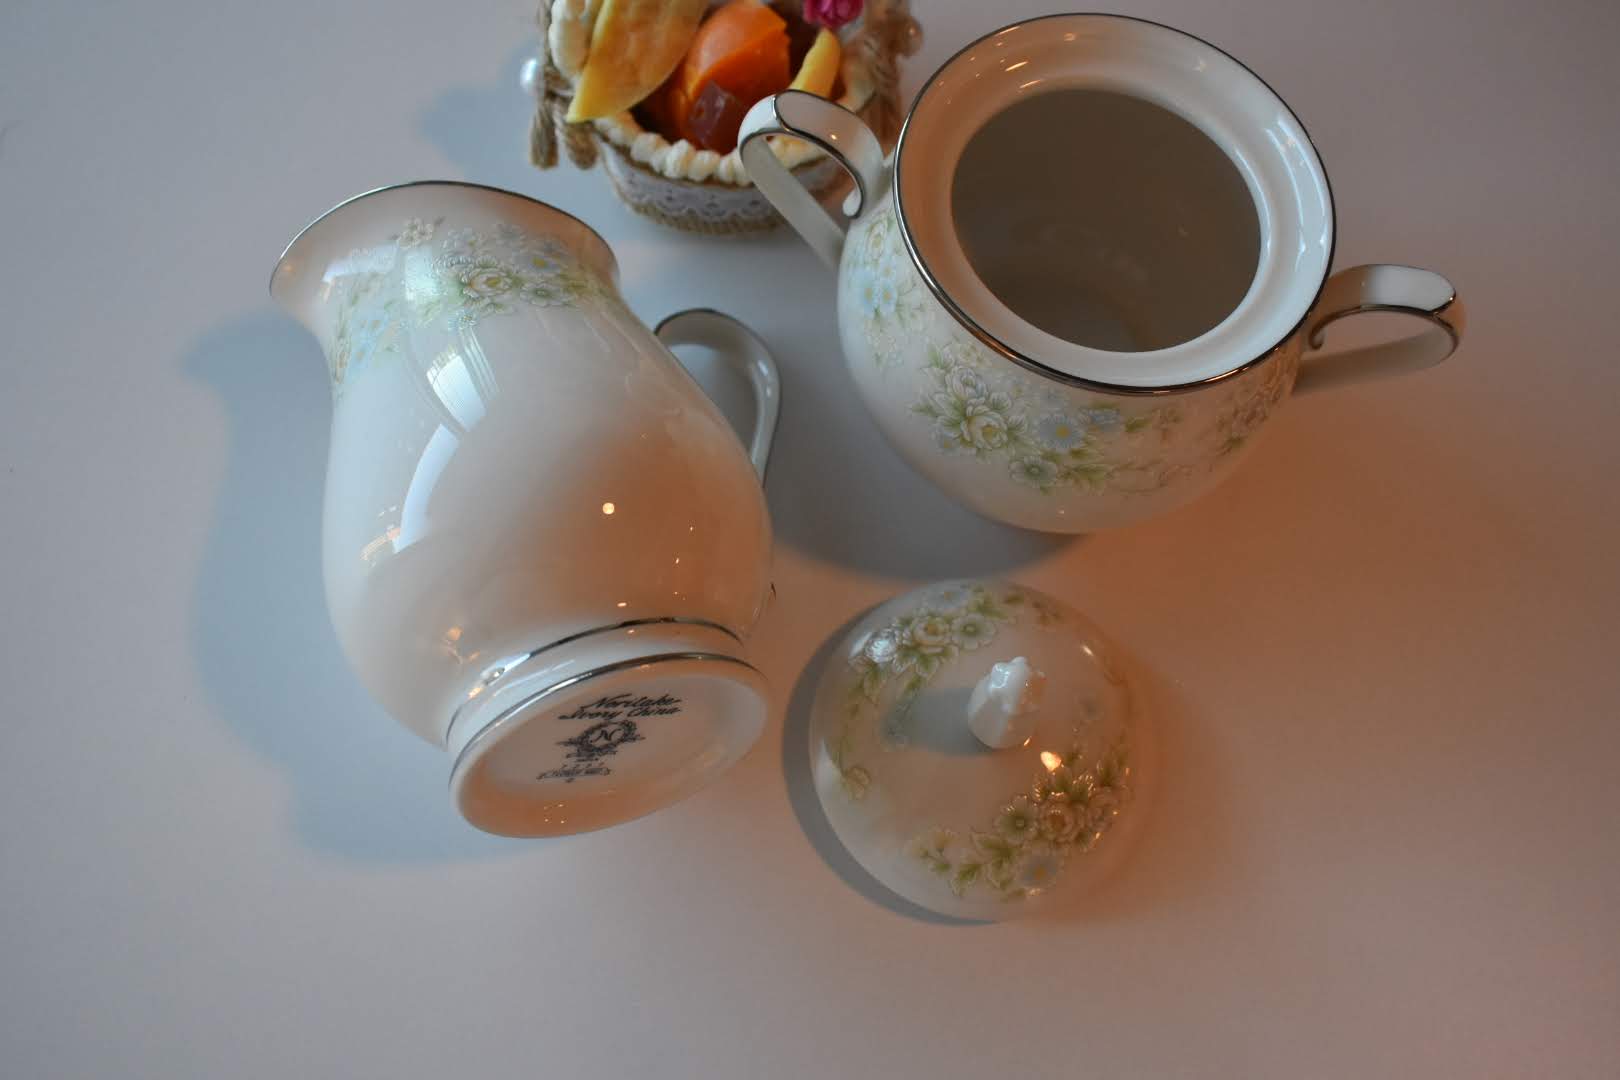 Noritake - Porcelain Fine China - Floral Pattern Platinum Trim - Sugar Bowl and Creamer Bowl